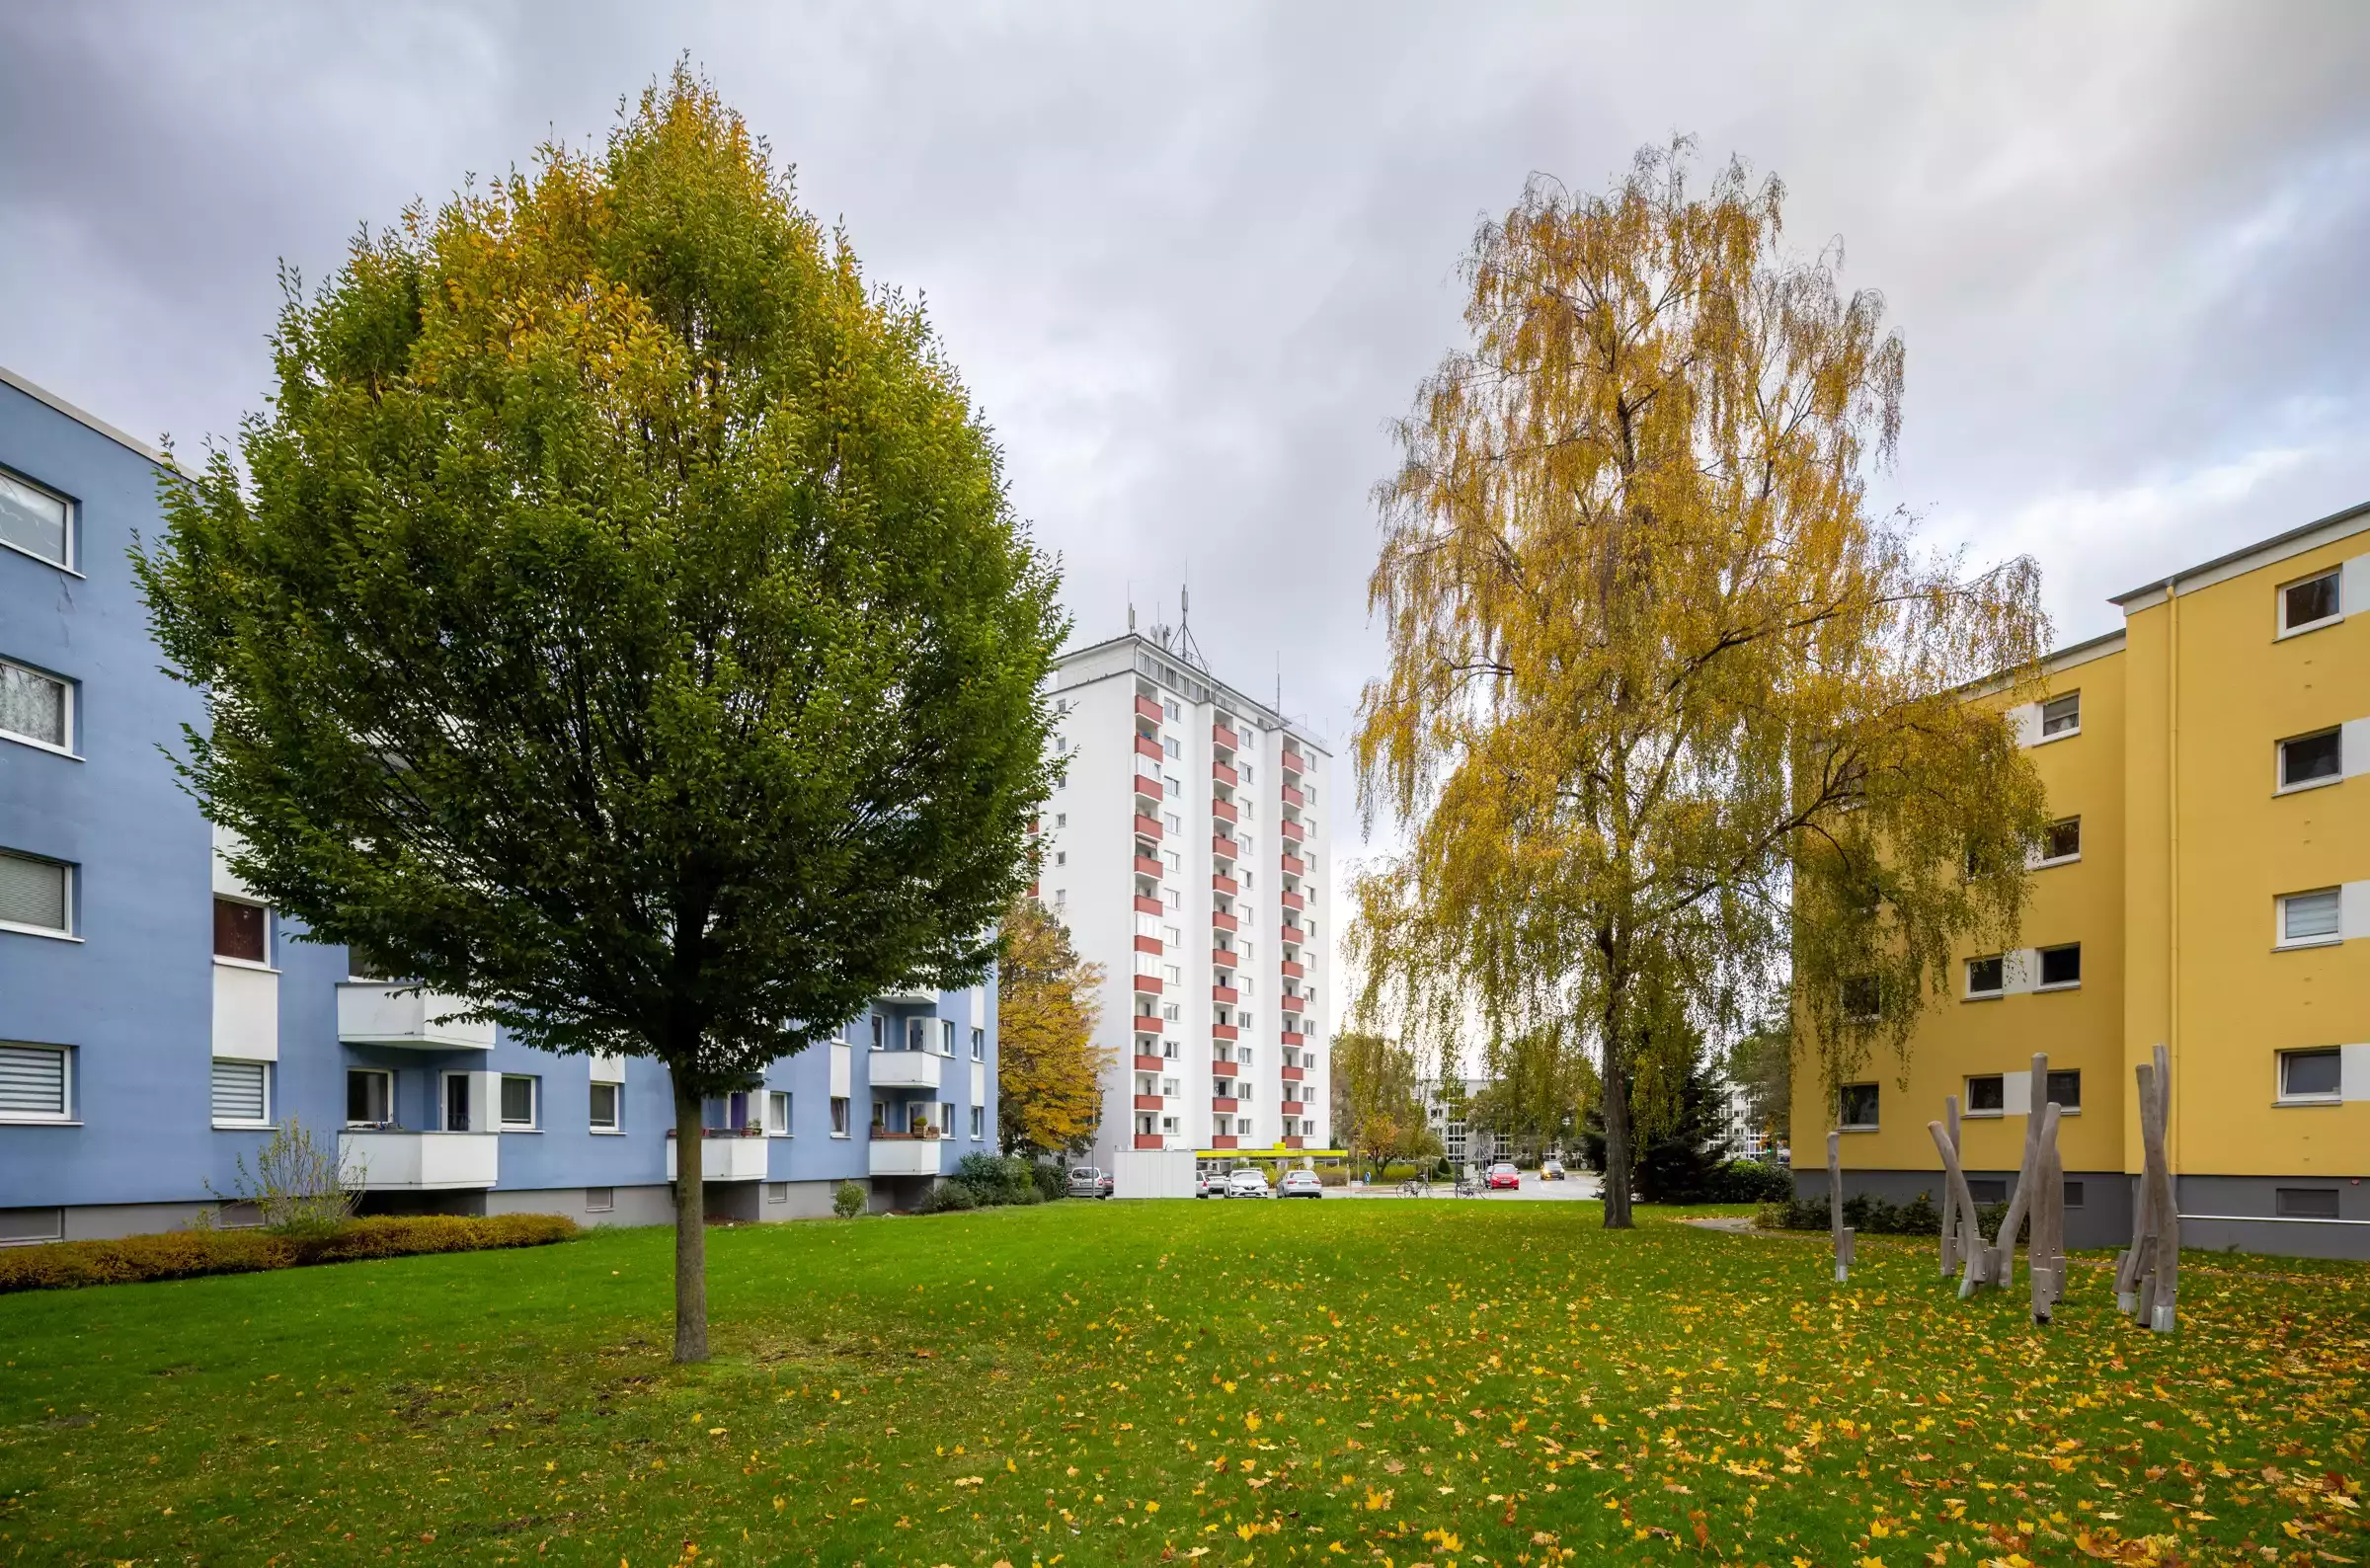 Herbstliche Bäume vor einem blauen und einem gelben Häuserblock